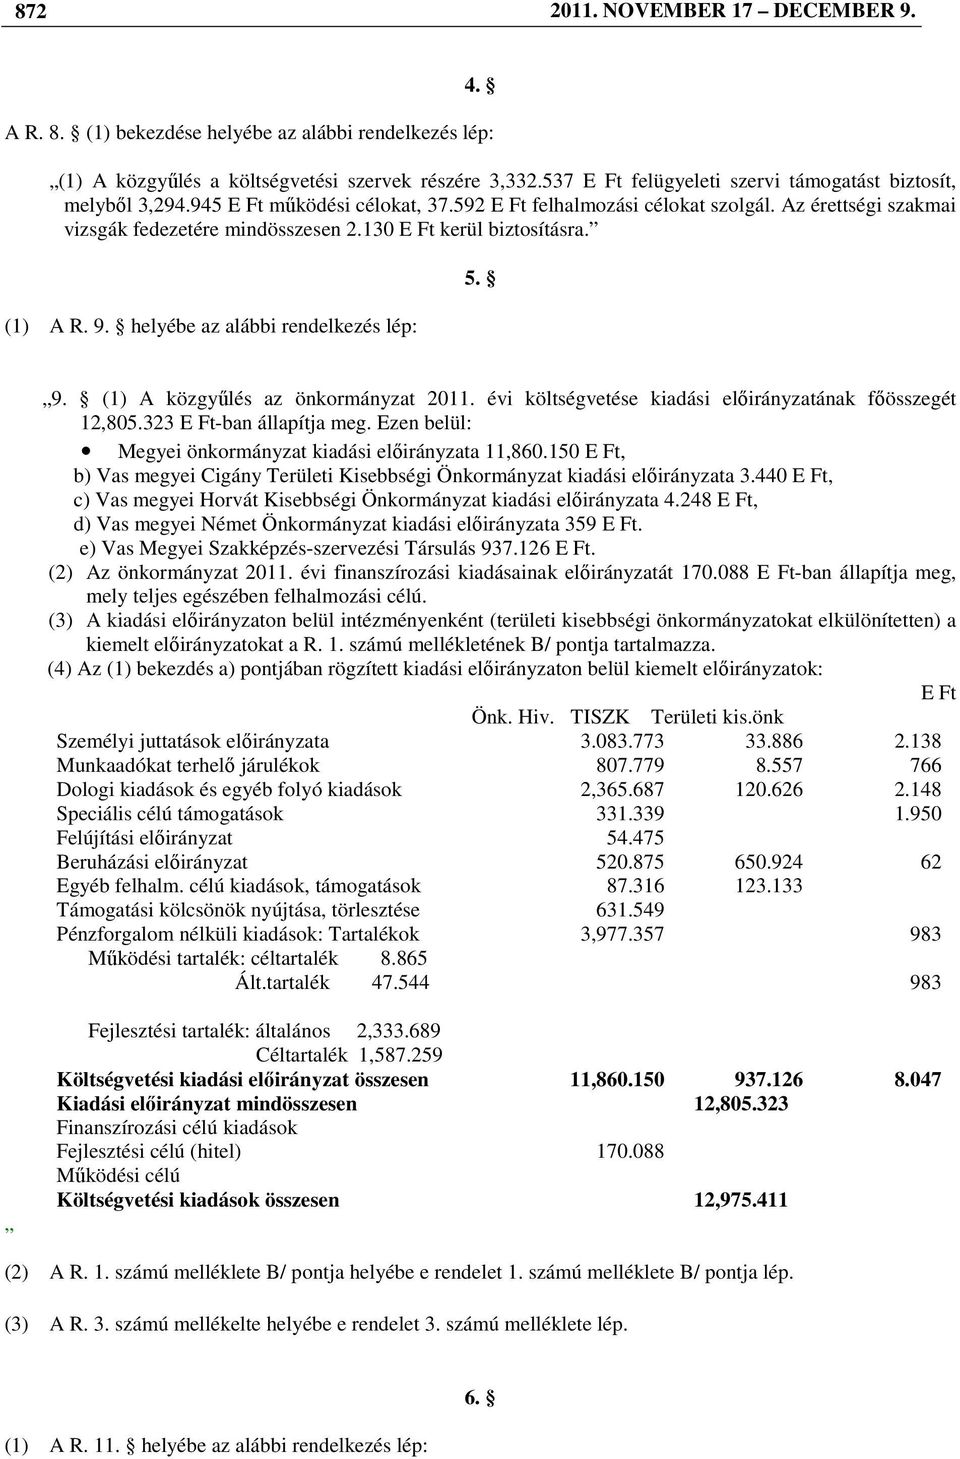 130 E Ft kerül biztosításra. (1) A R. 9. helyébe az alábbi rendelkezés lép: 5. 9. (1) A közgyőlés az önkormányzat 2011. évi költségvetése kiadási elıirányzatának fıösszegét 12,805.